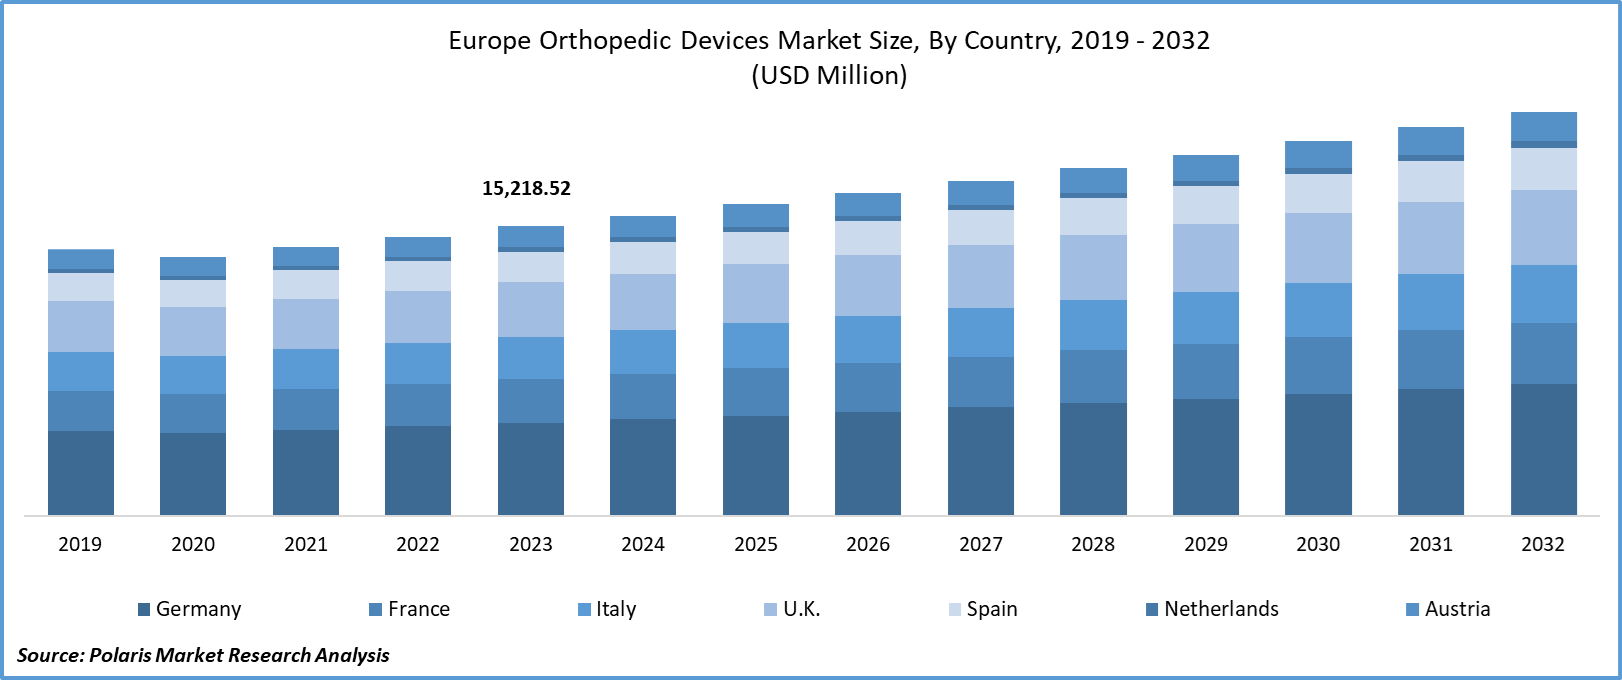 Europe Orthopedic Devices Market Size